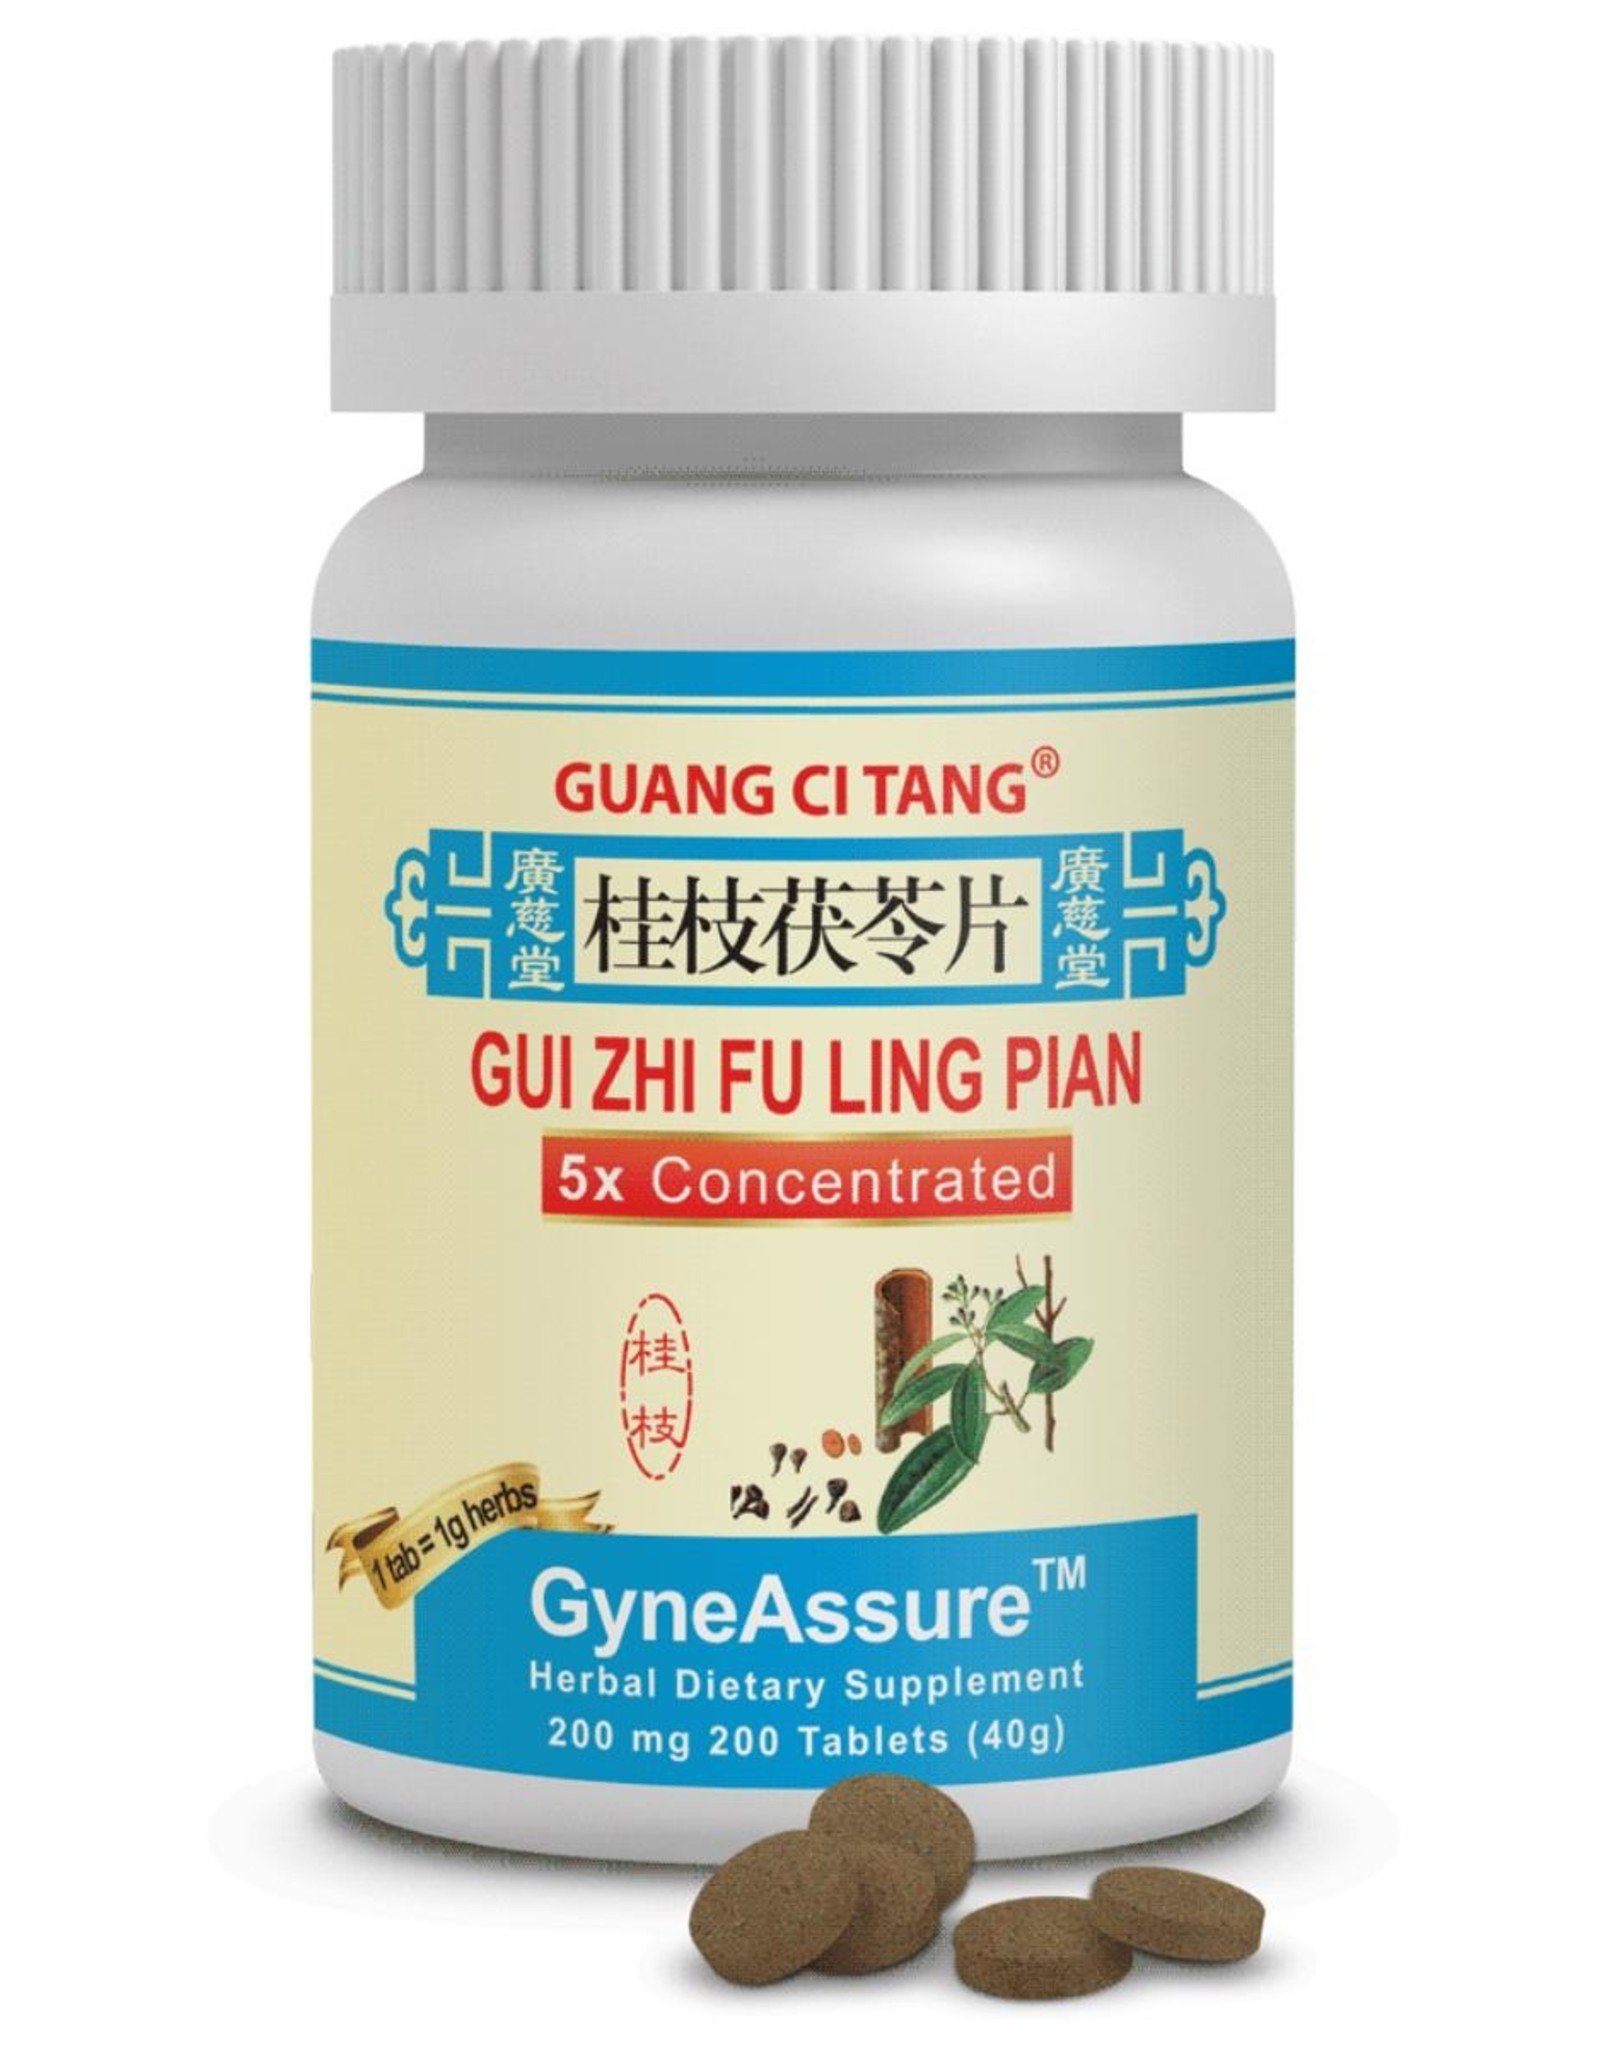 Guang Ci Tang Gui Zhi Fu Ling Pian - GyneAssure